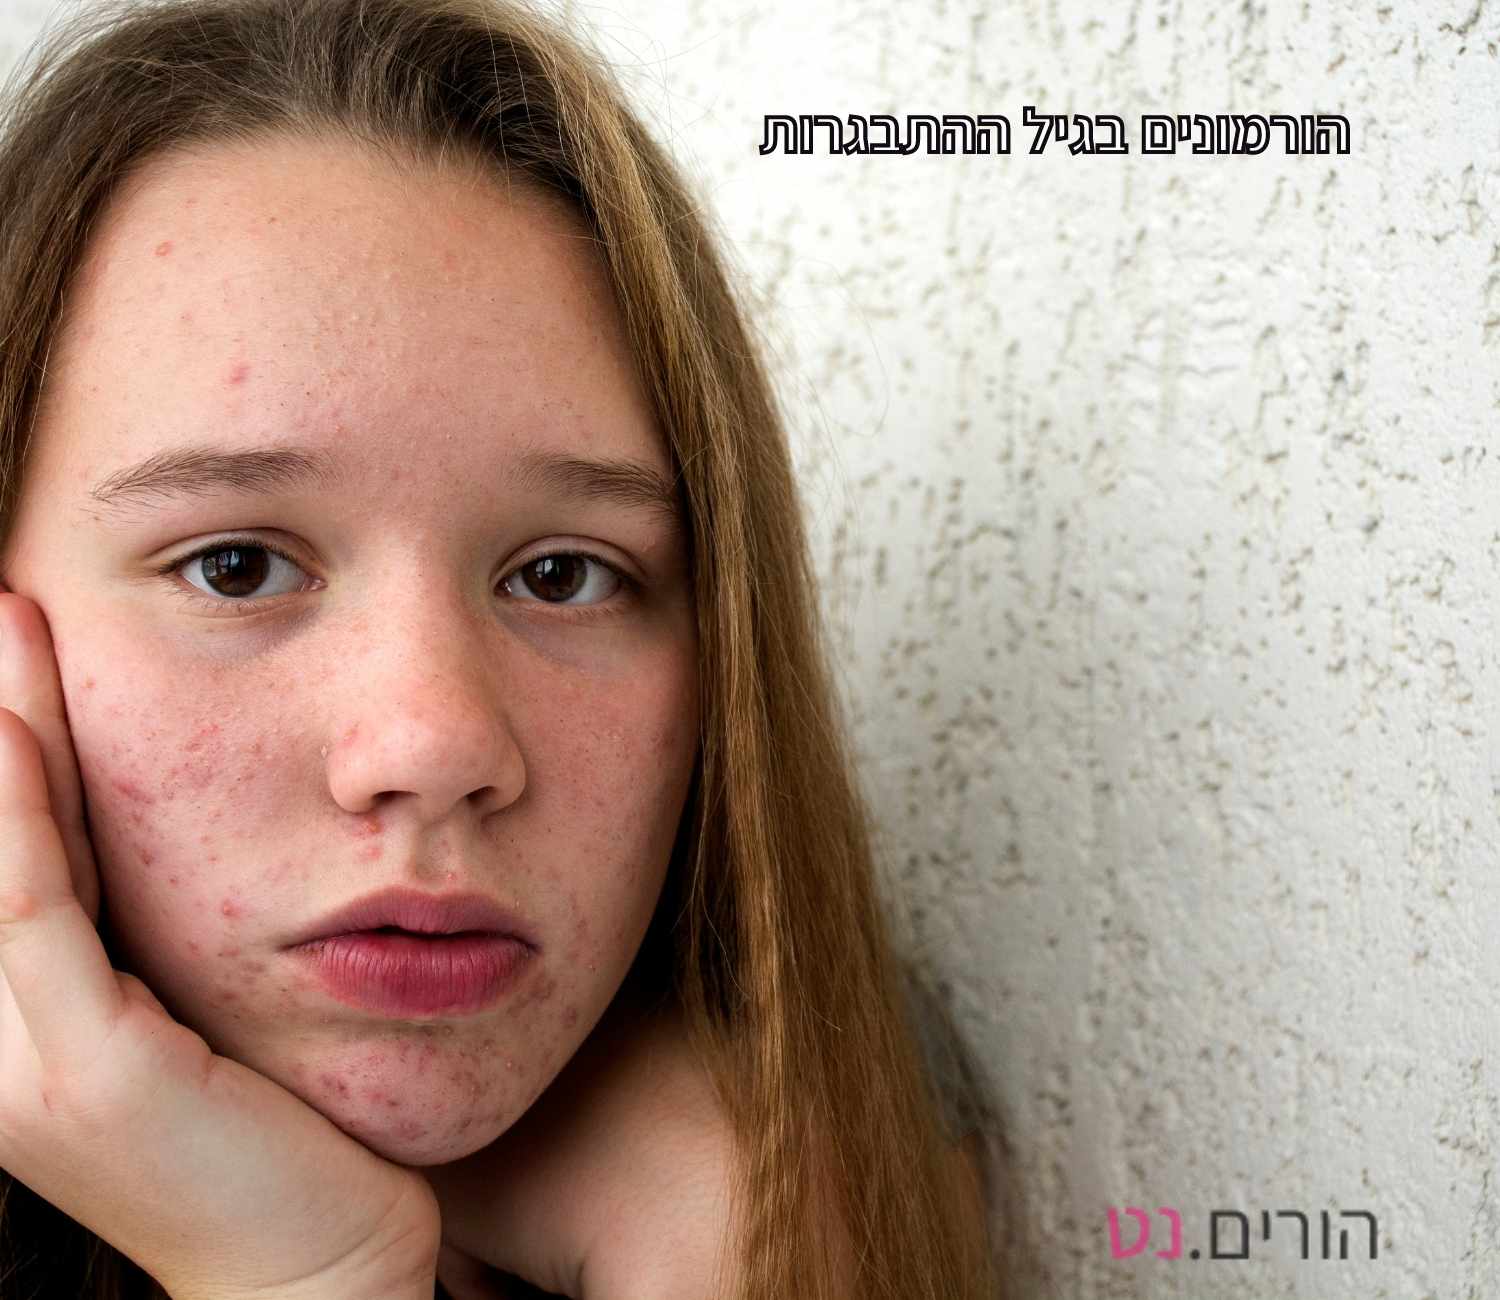 מתבגרת הורמונלית עם פצעים על הפנים